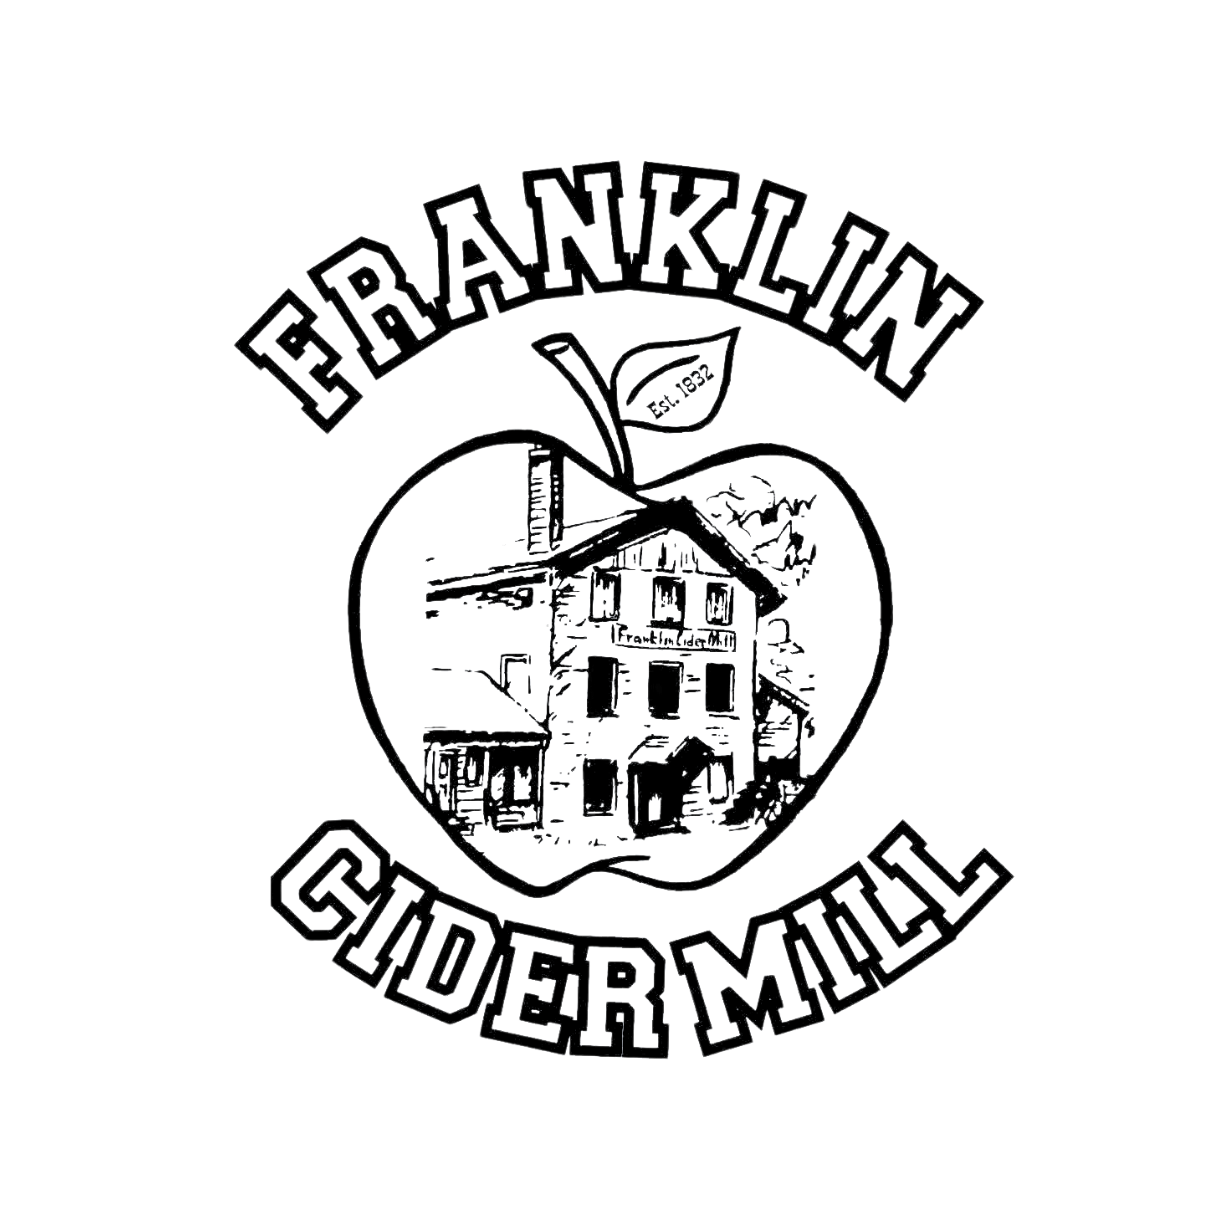 Franklin Cider Mill logo